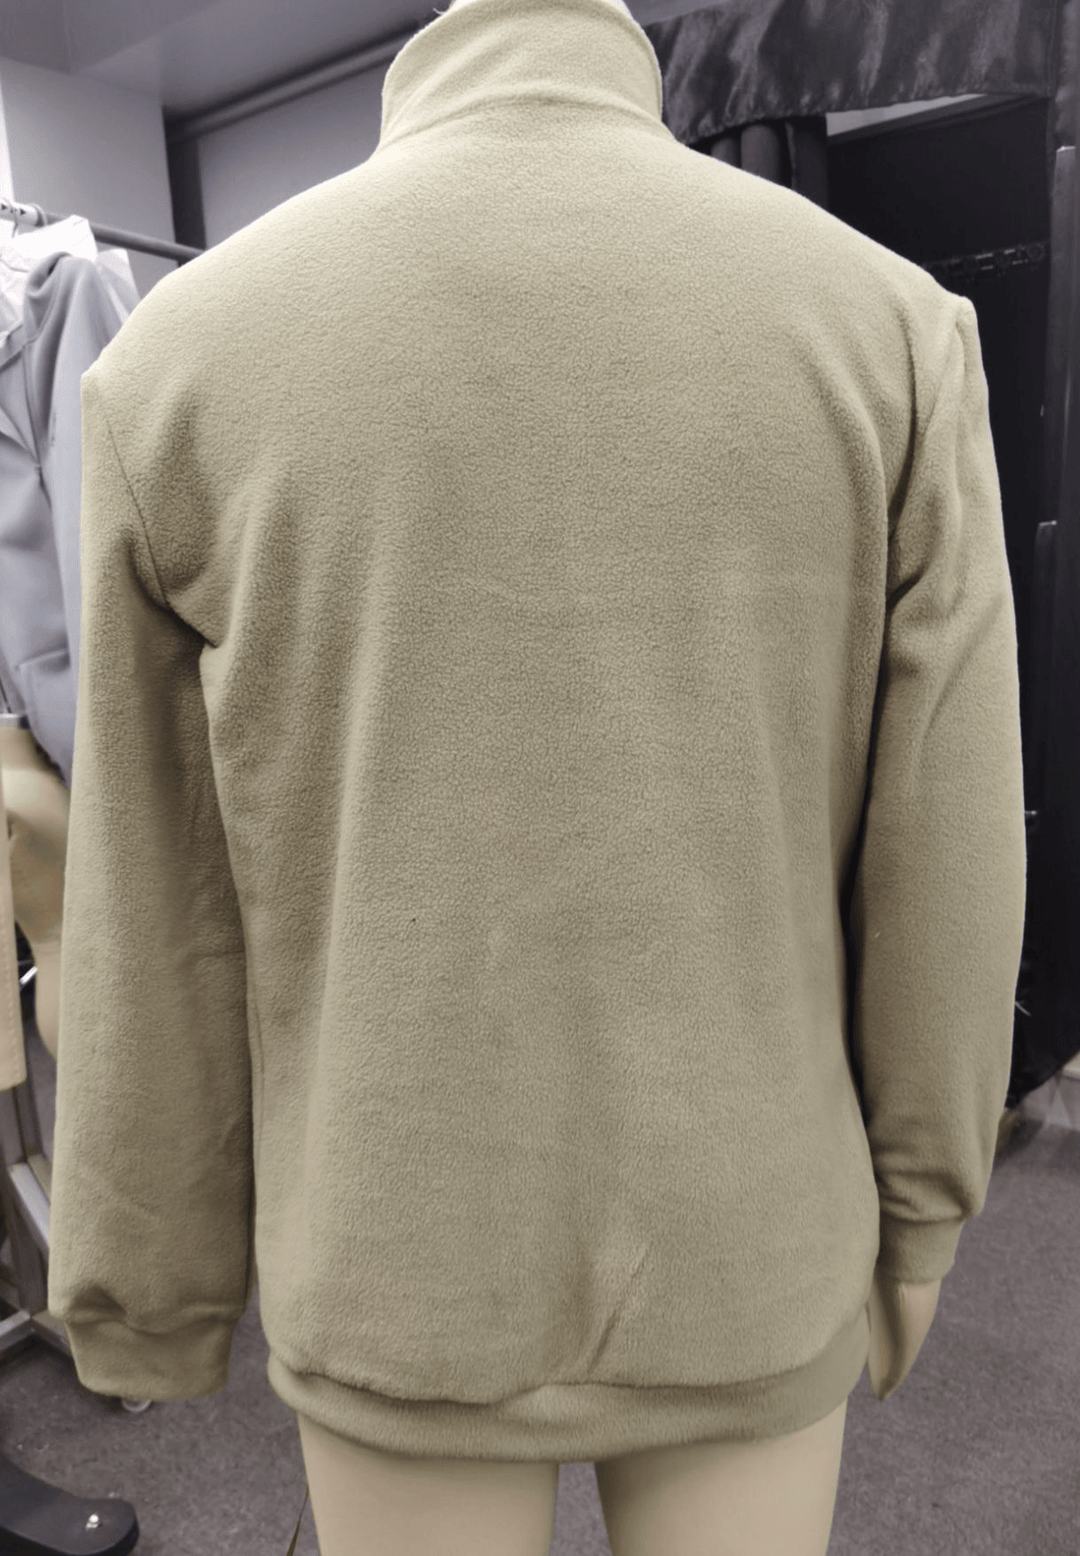 Men'S Outdoor Long-Sleeved Zipper Stand-Up Collar Sports Sweatshirt - MRSLM